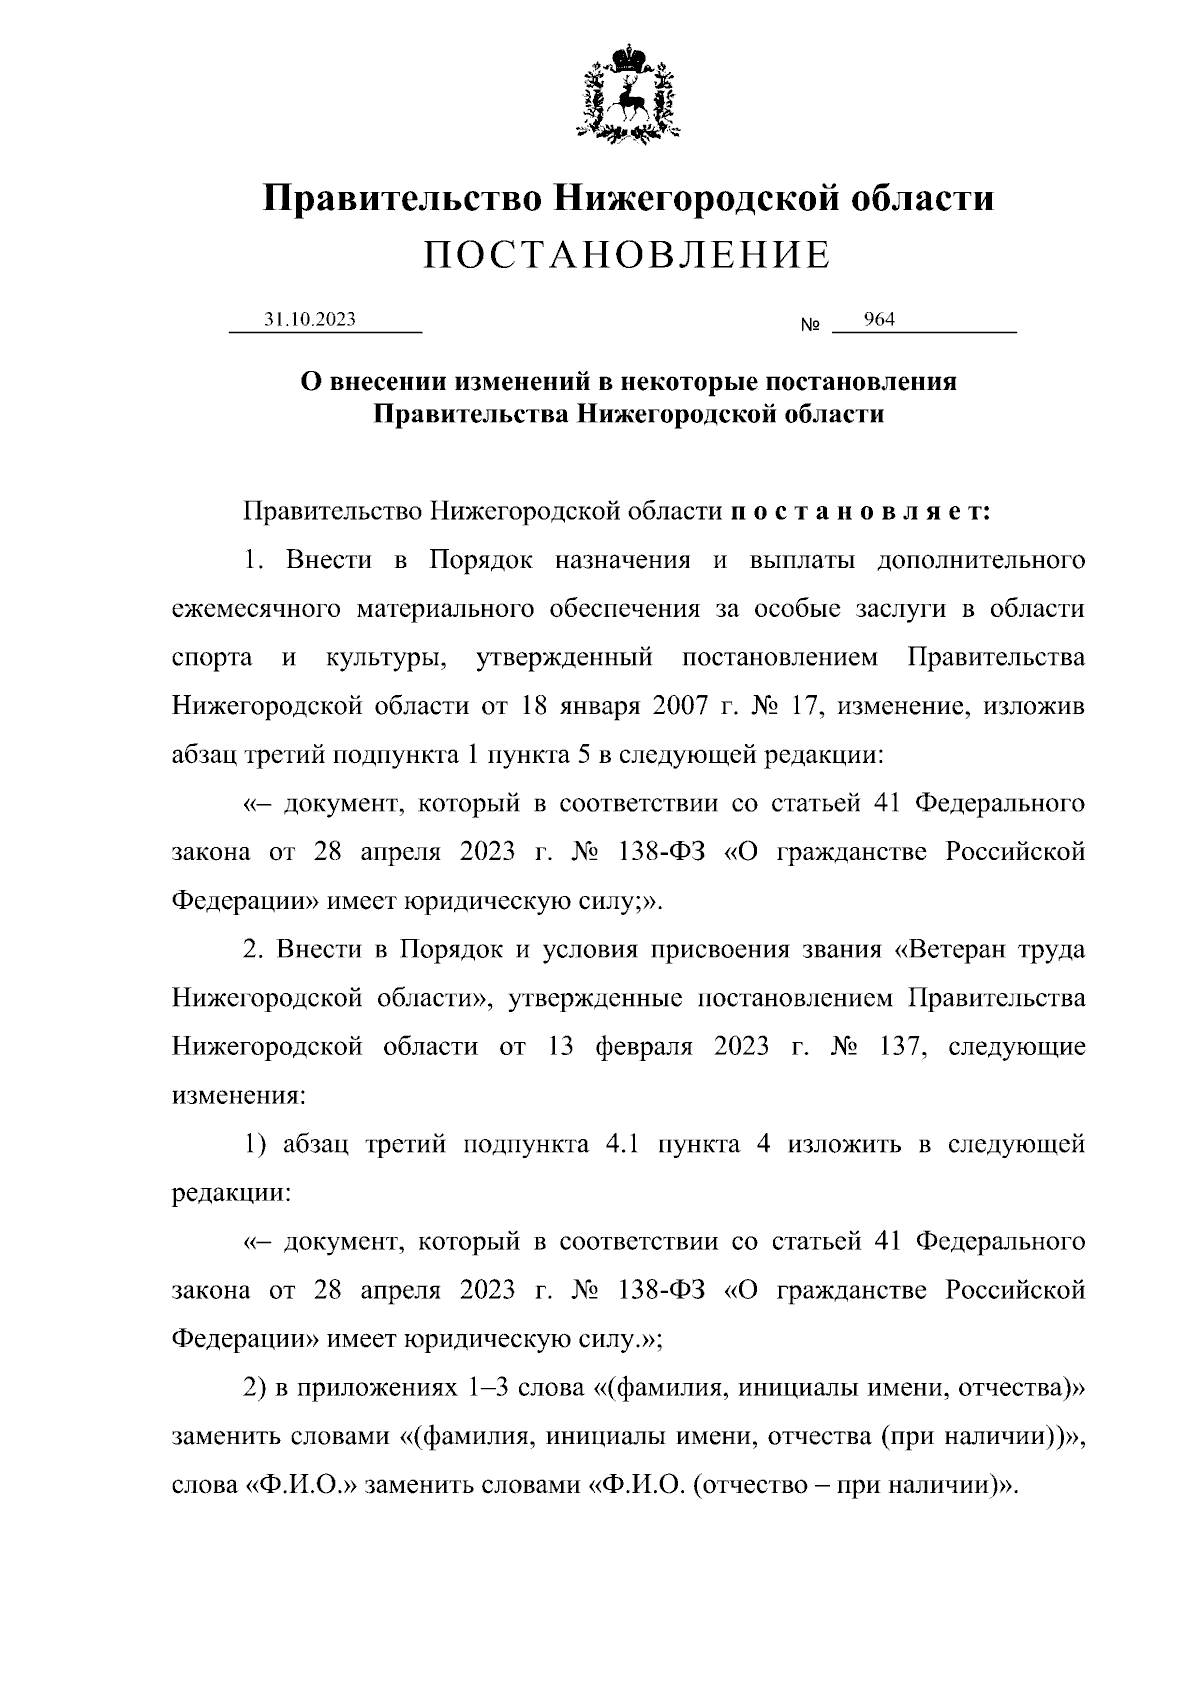 Постановление Правительства Нижегородской области от 31.10.2023 № 964 ∙  Официальное опубликование правовых актов